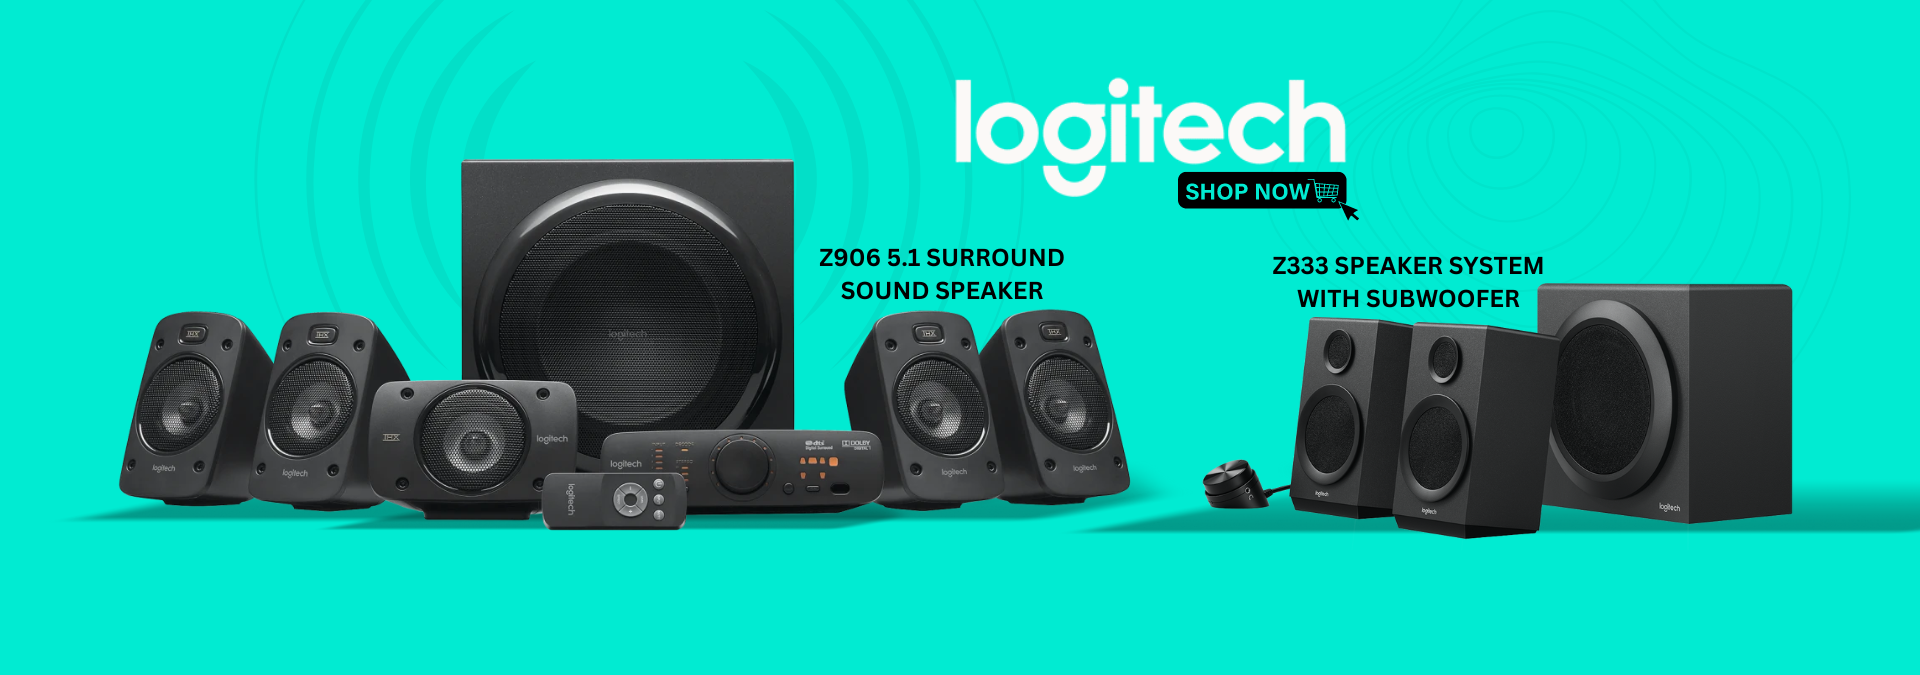 Z906 5.1 Surround Sound Speaker Banner